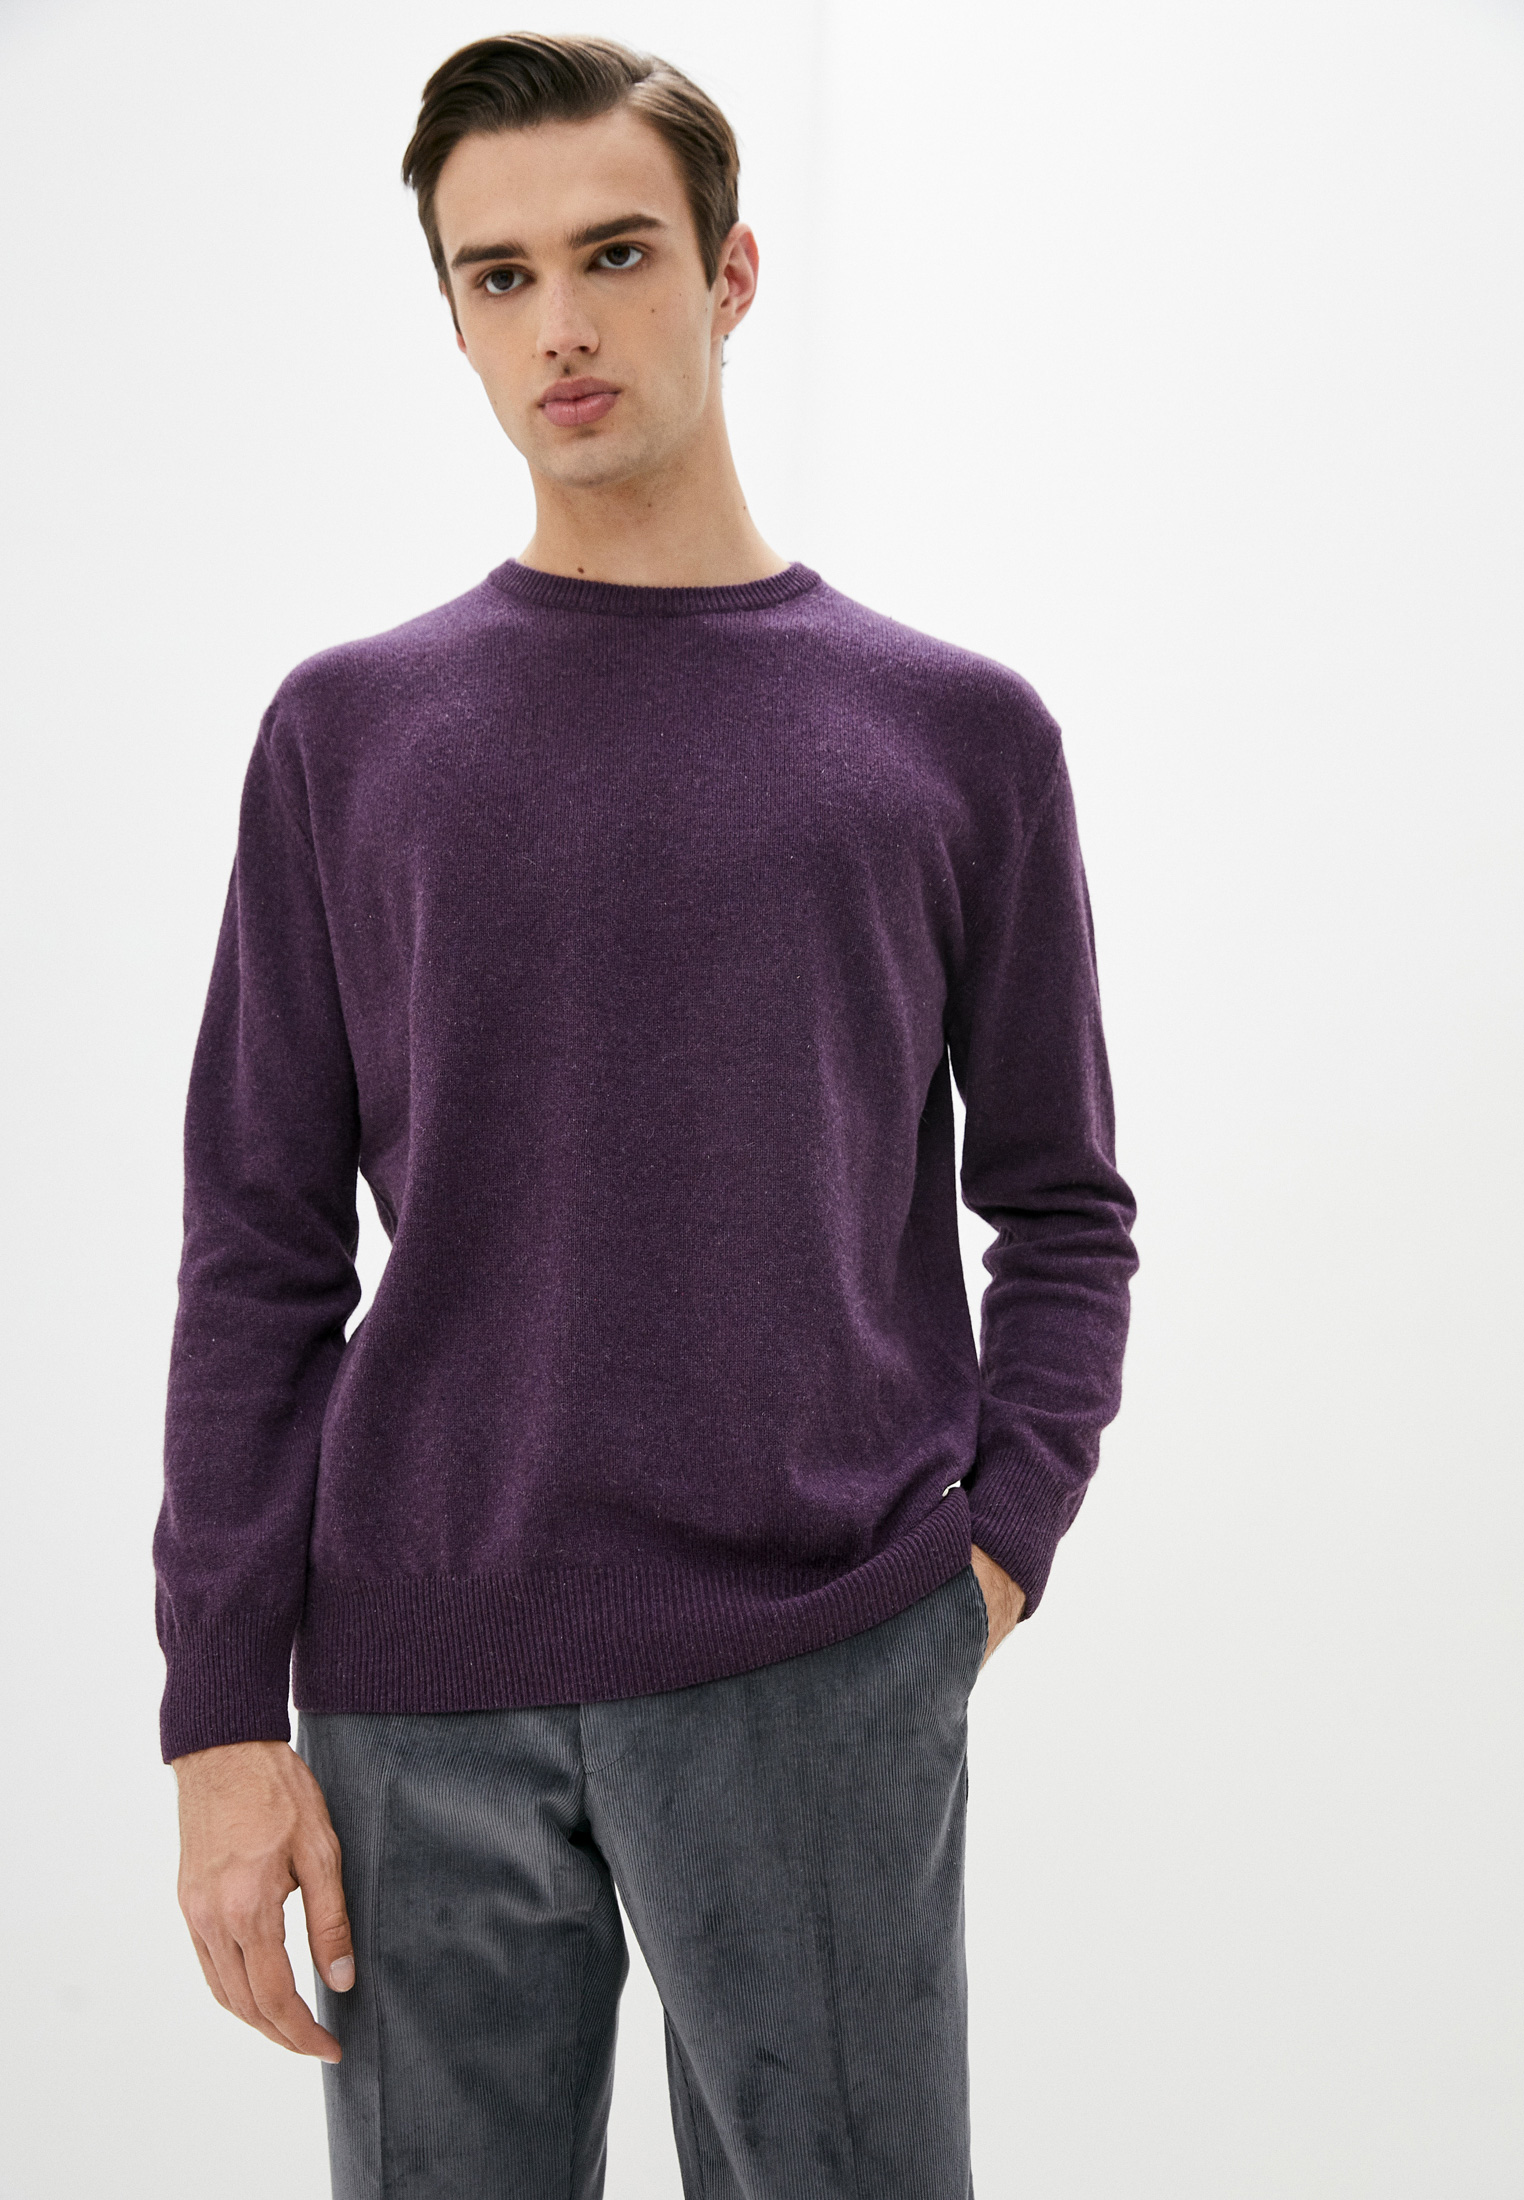 Труссарди фиолетовые. Труссарди свитер фиолетовый. Trussardi свитер. Сиреневый свитер мужской. Trussardi фиолетовые.